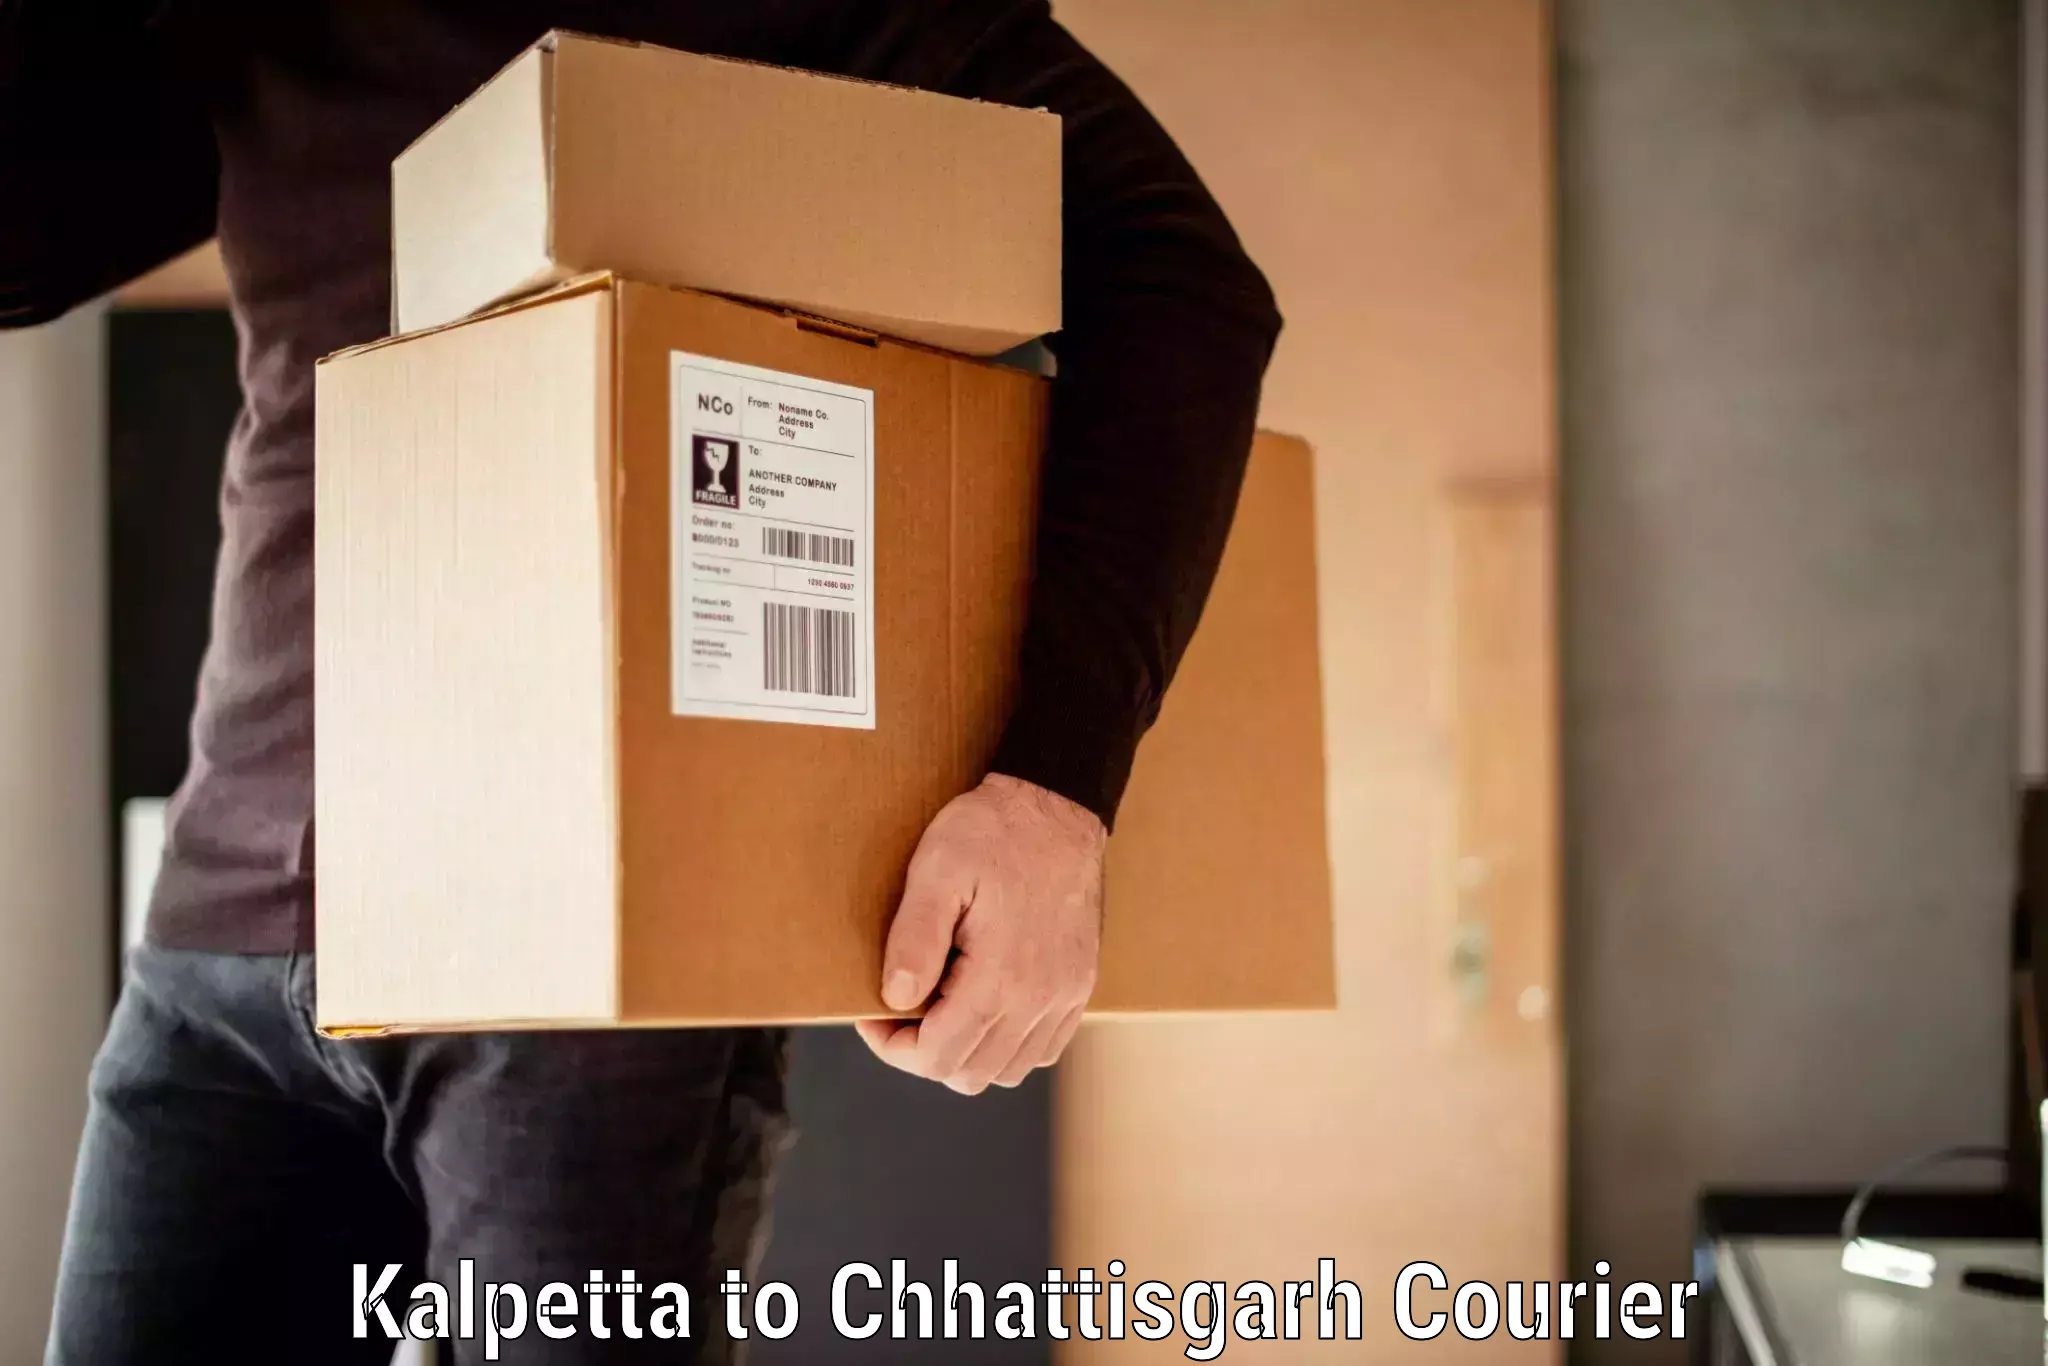 Baggage transport innovation Kalpetta to Jagdalpur